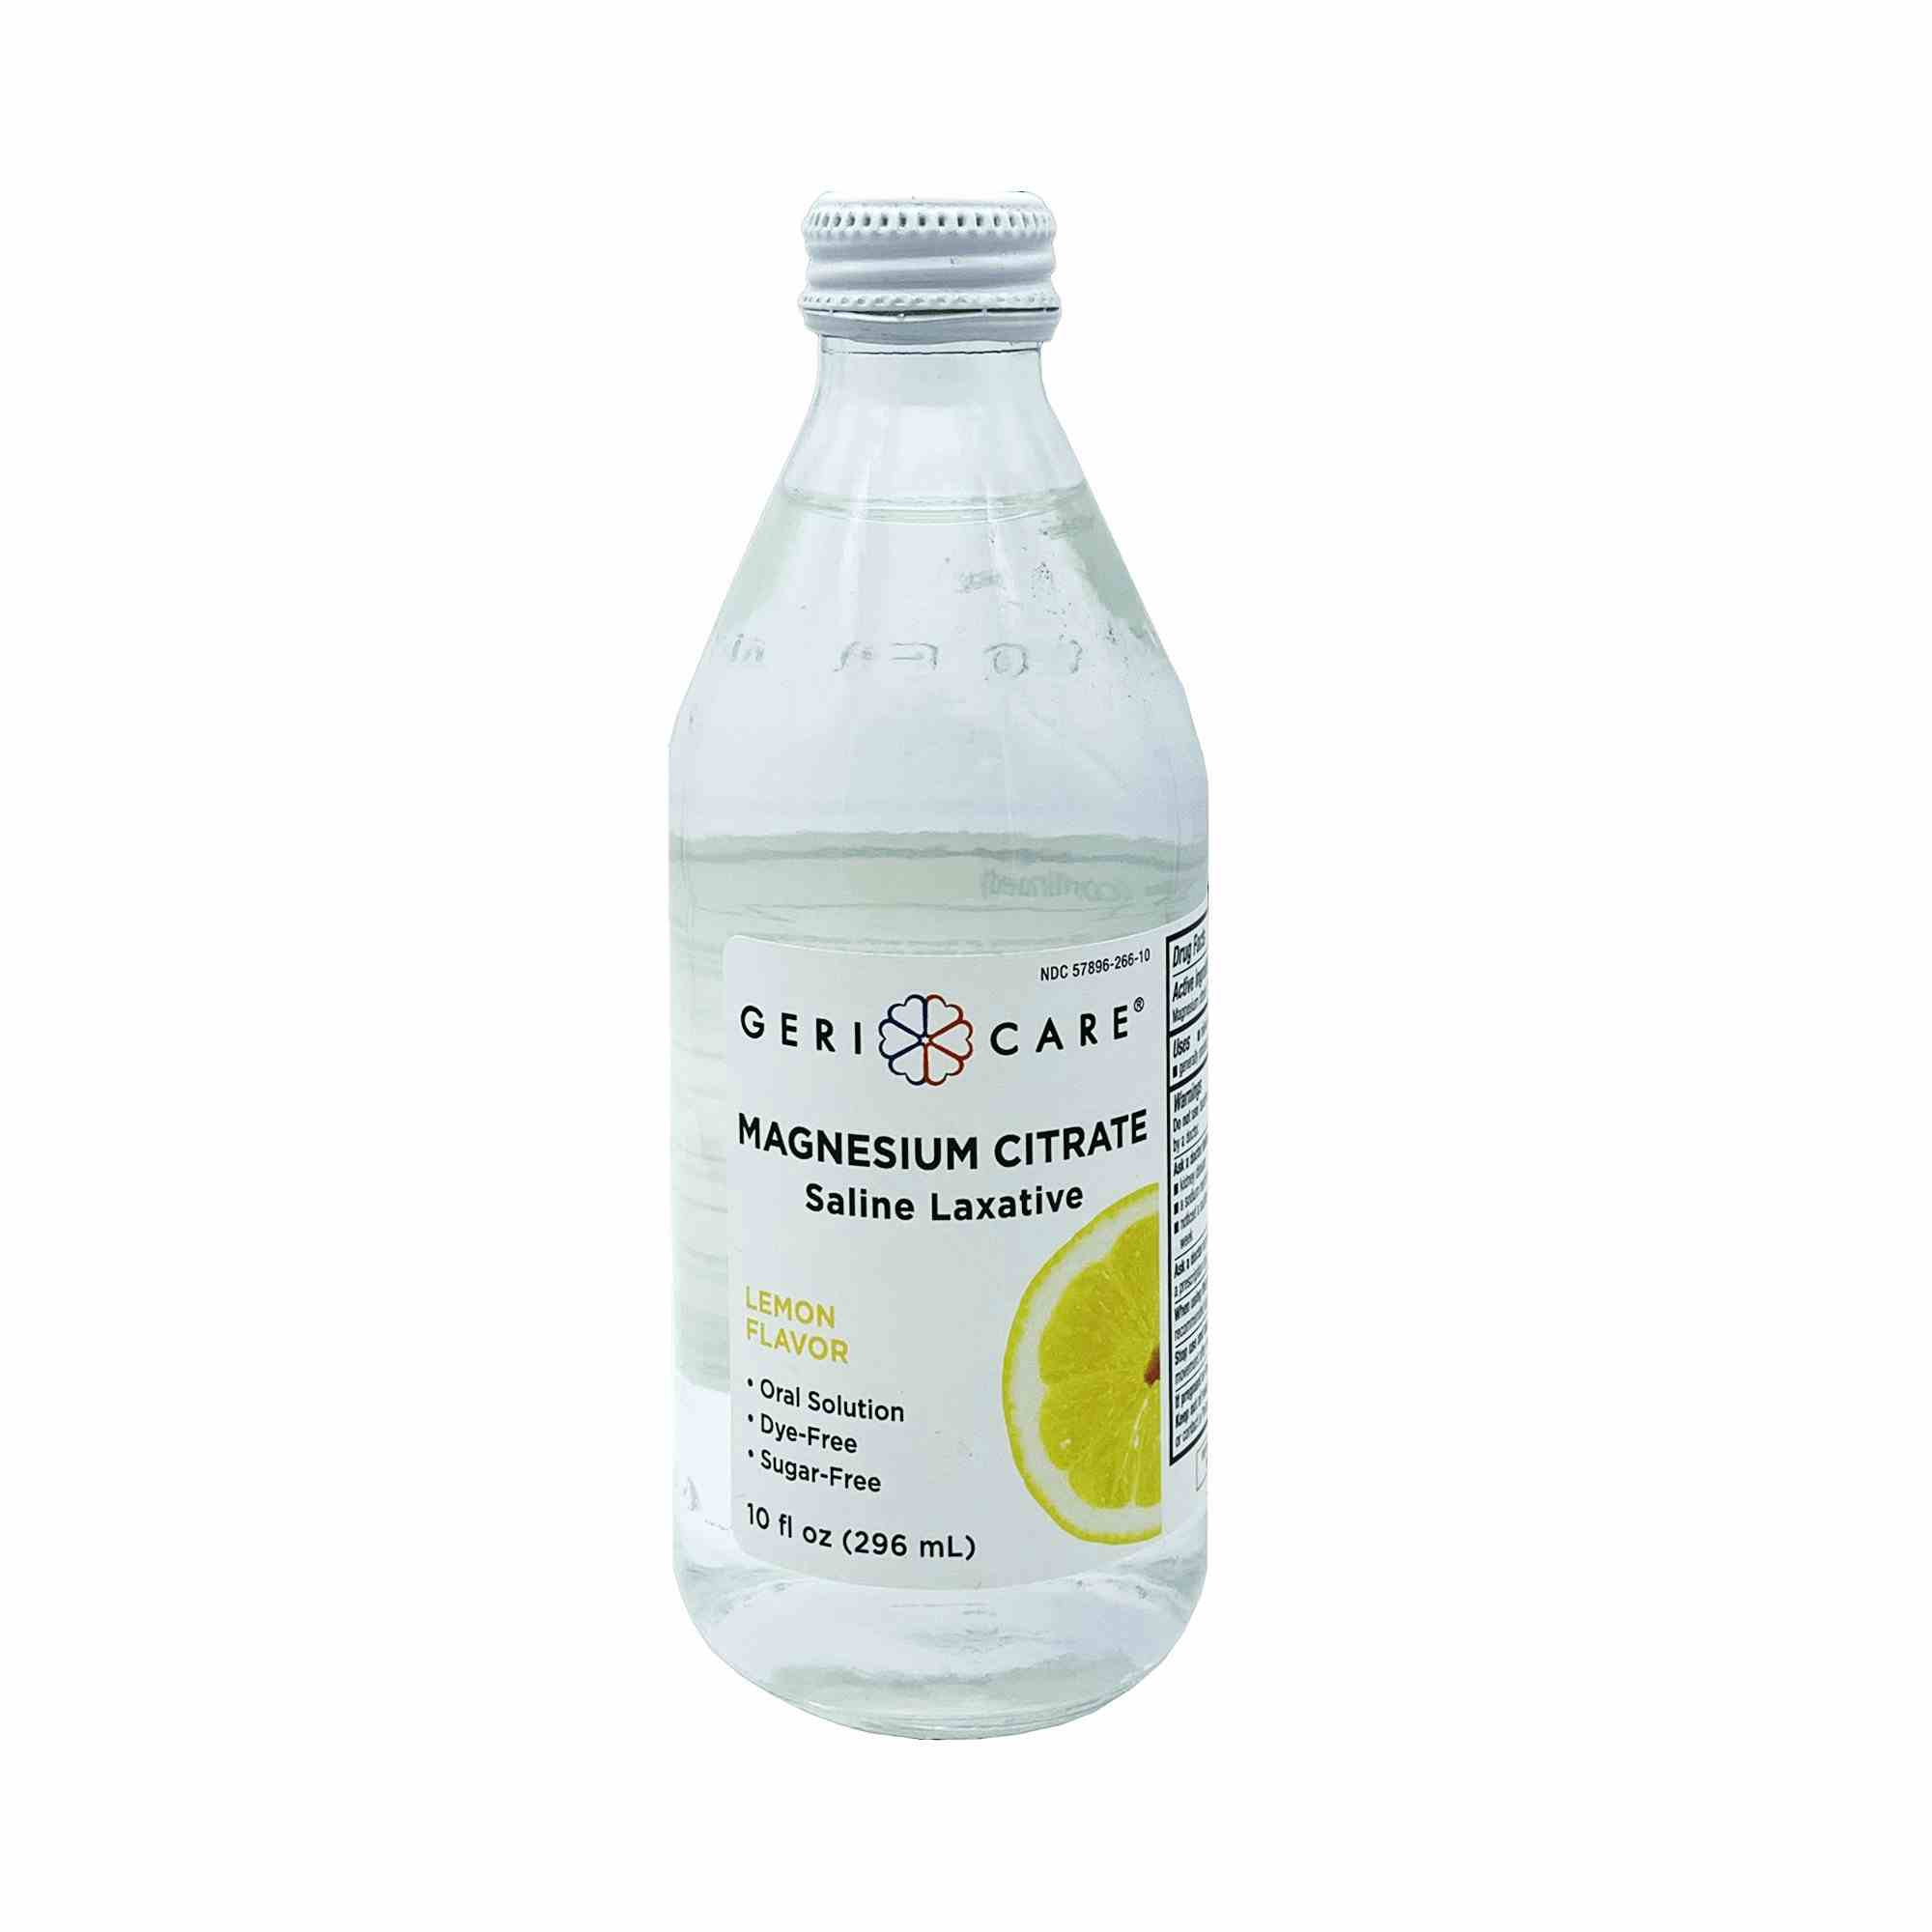 Geri-Care Magnesium Citrate Saline Laxative, Lemon Flavor, 10 oz., QCOM-10-GCP, 1 Bottle